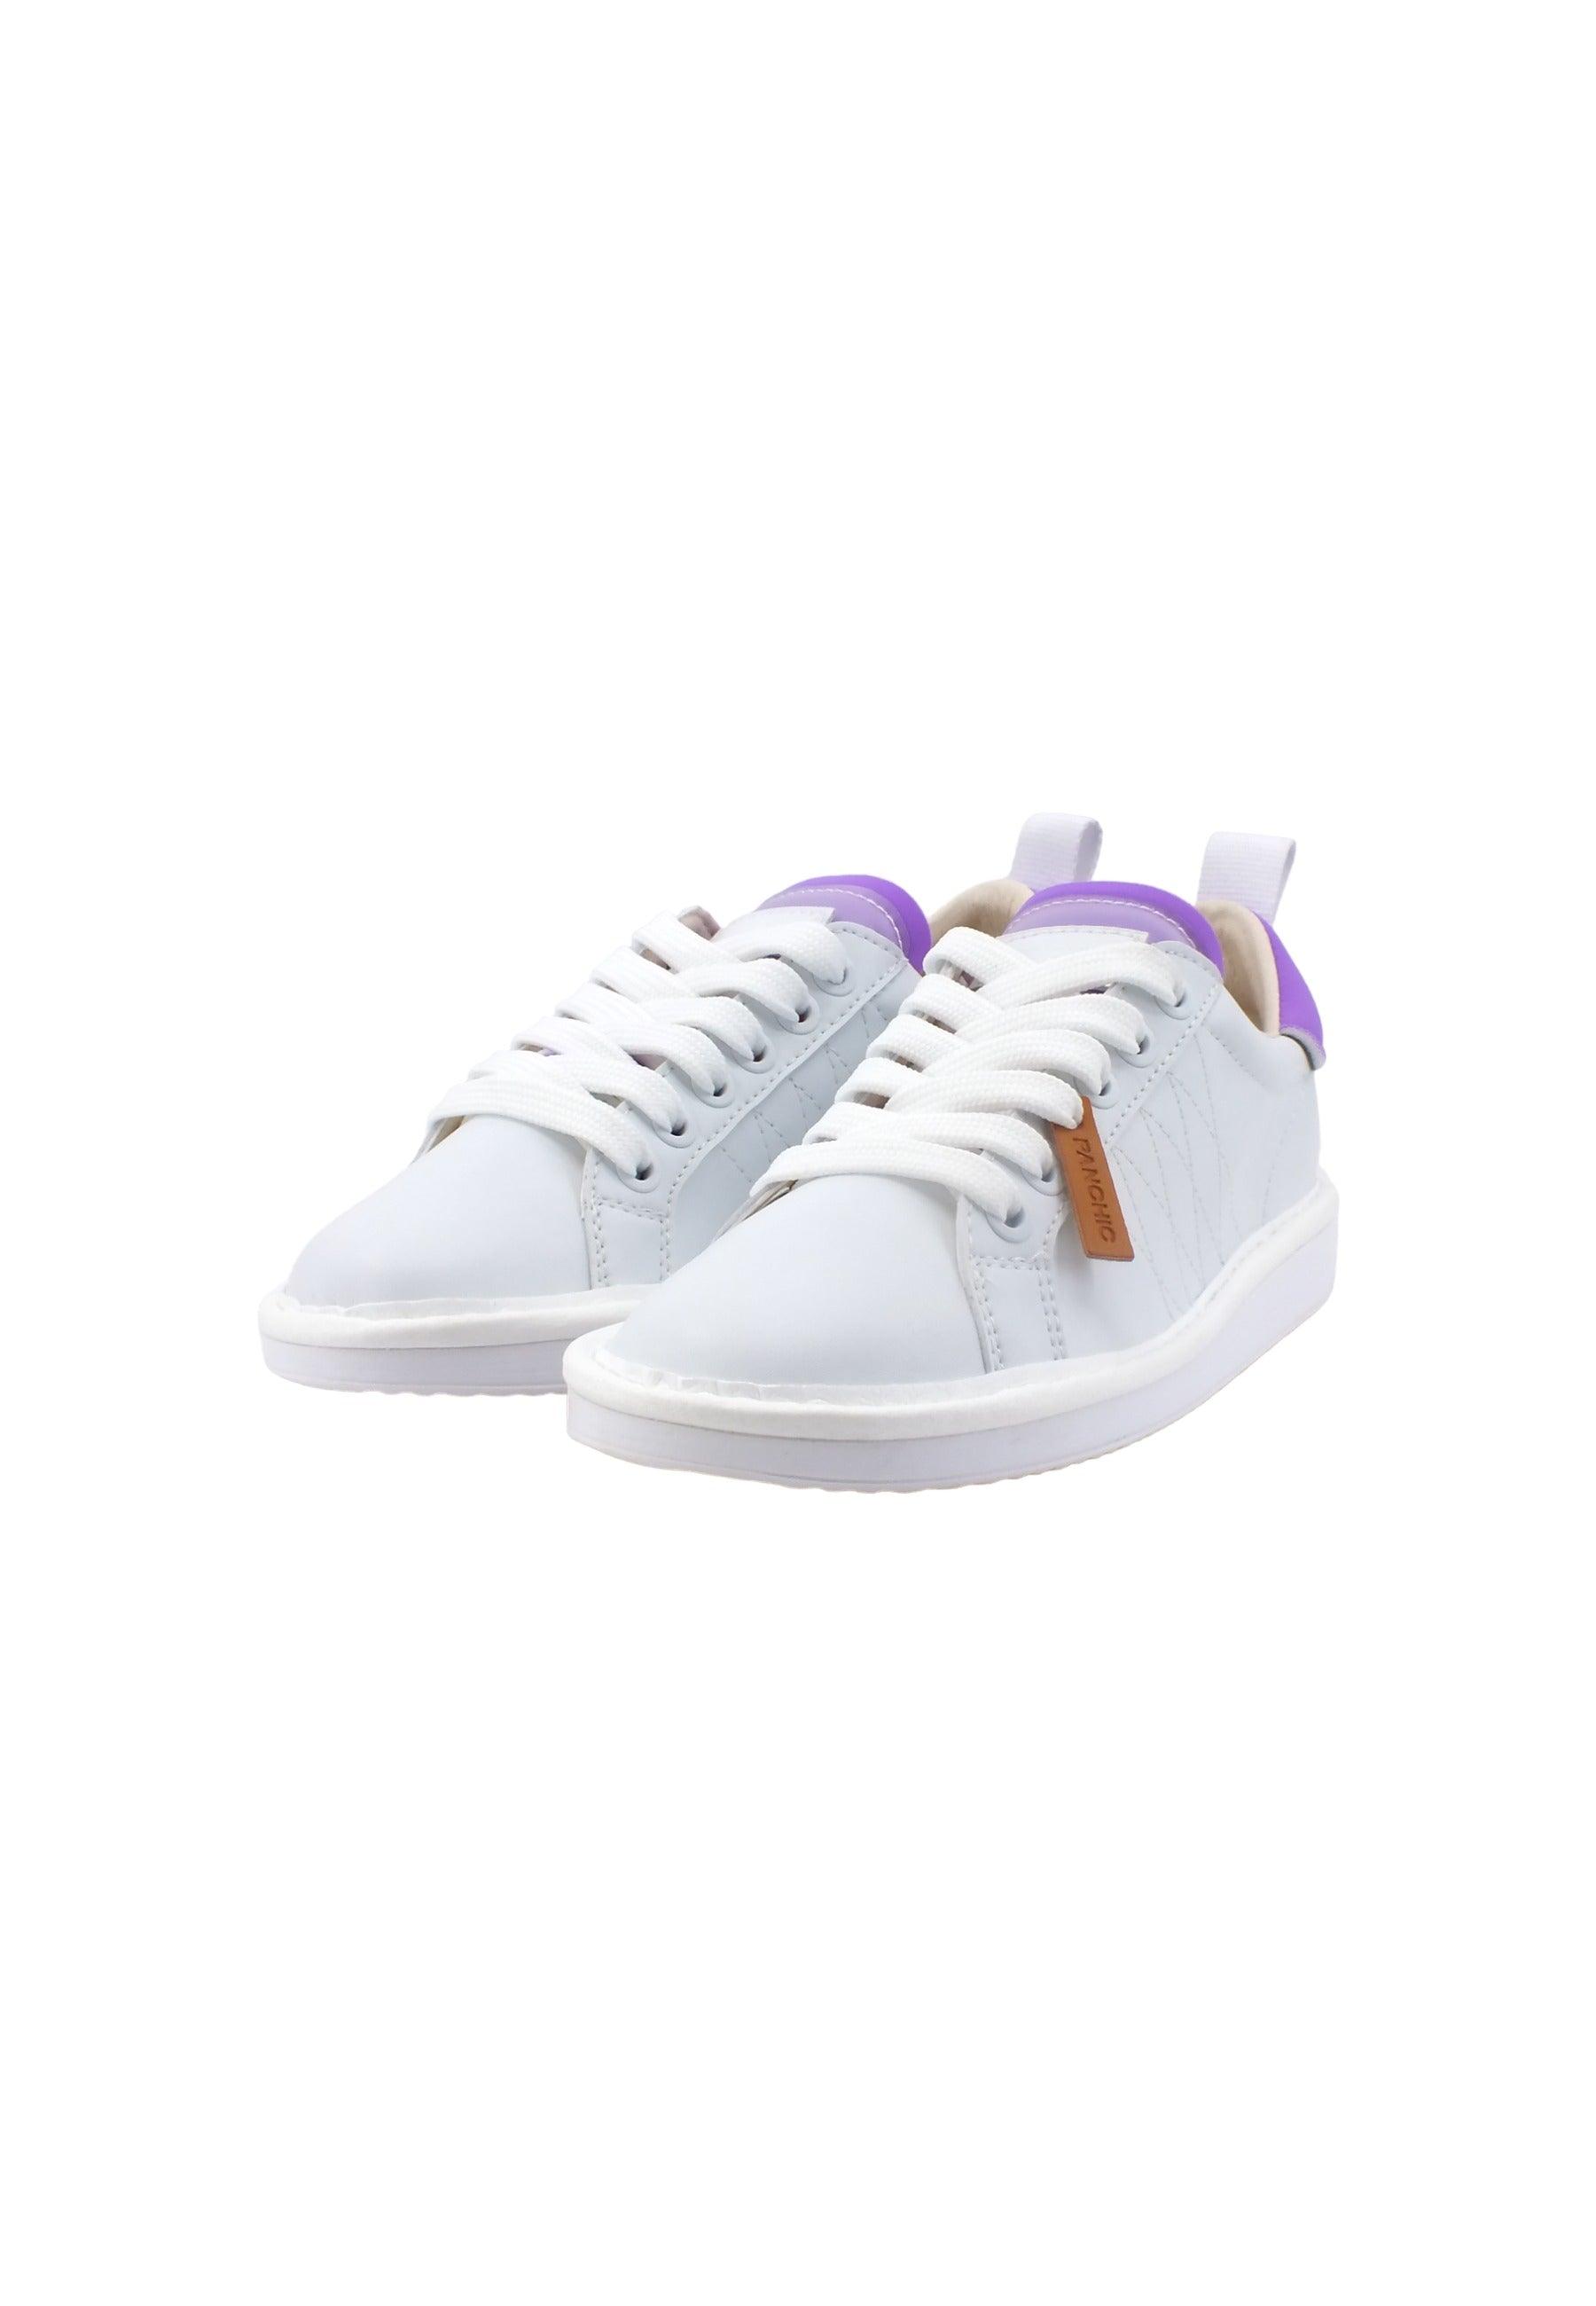 PAN CHIC Sneaker Bambino White Violet P01K00300260016 - Sandrini Calzature e Abbigliamento